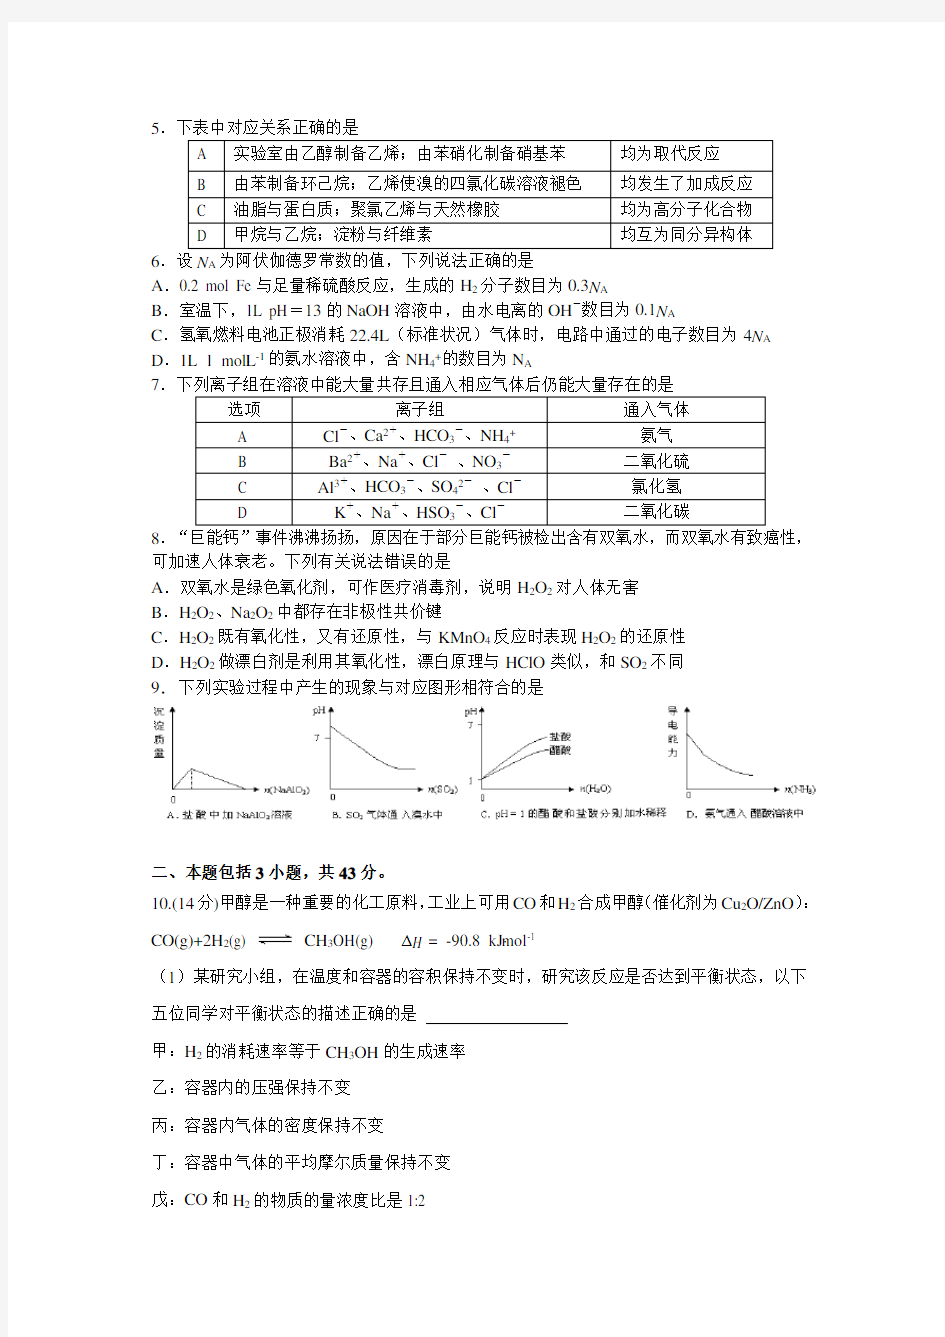 2015年辽宁省高中学生化学竞赛试题+(时间+90分钟,共100分)